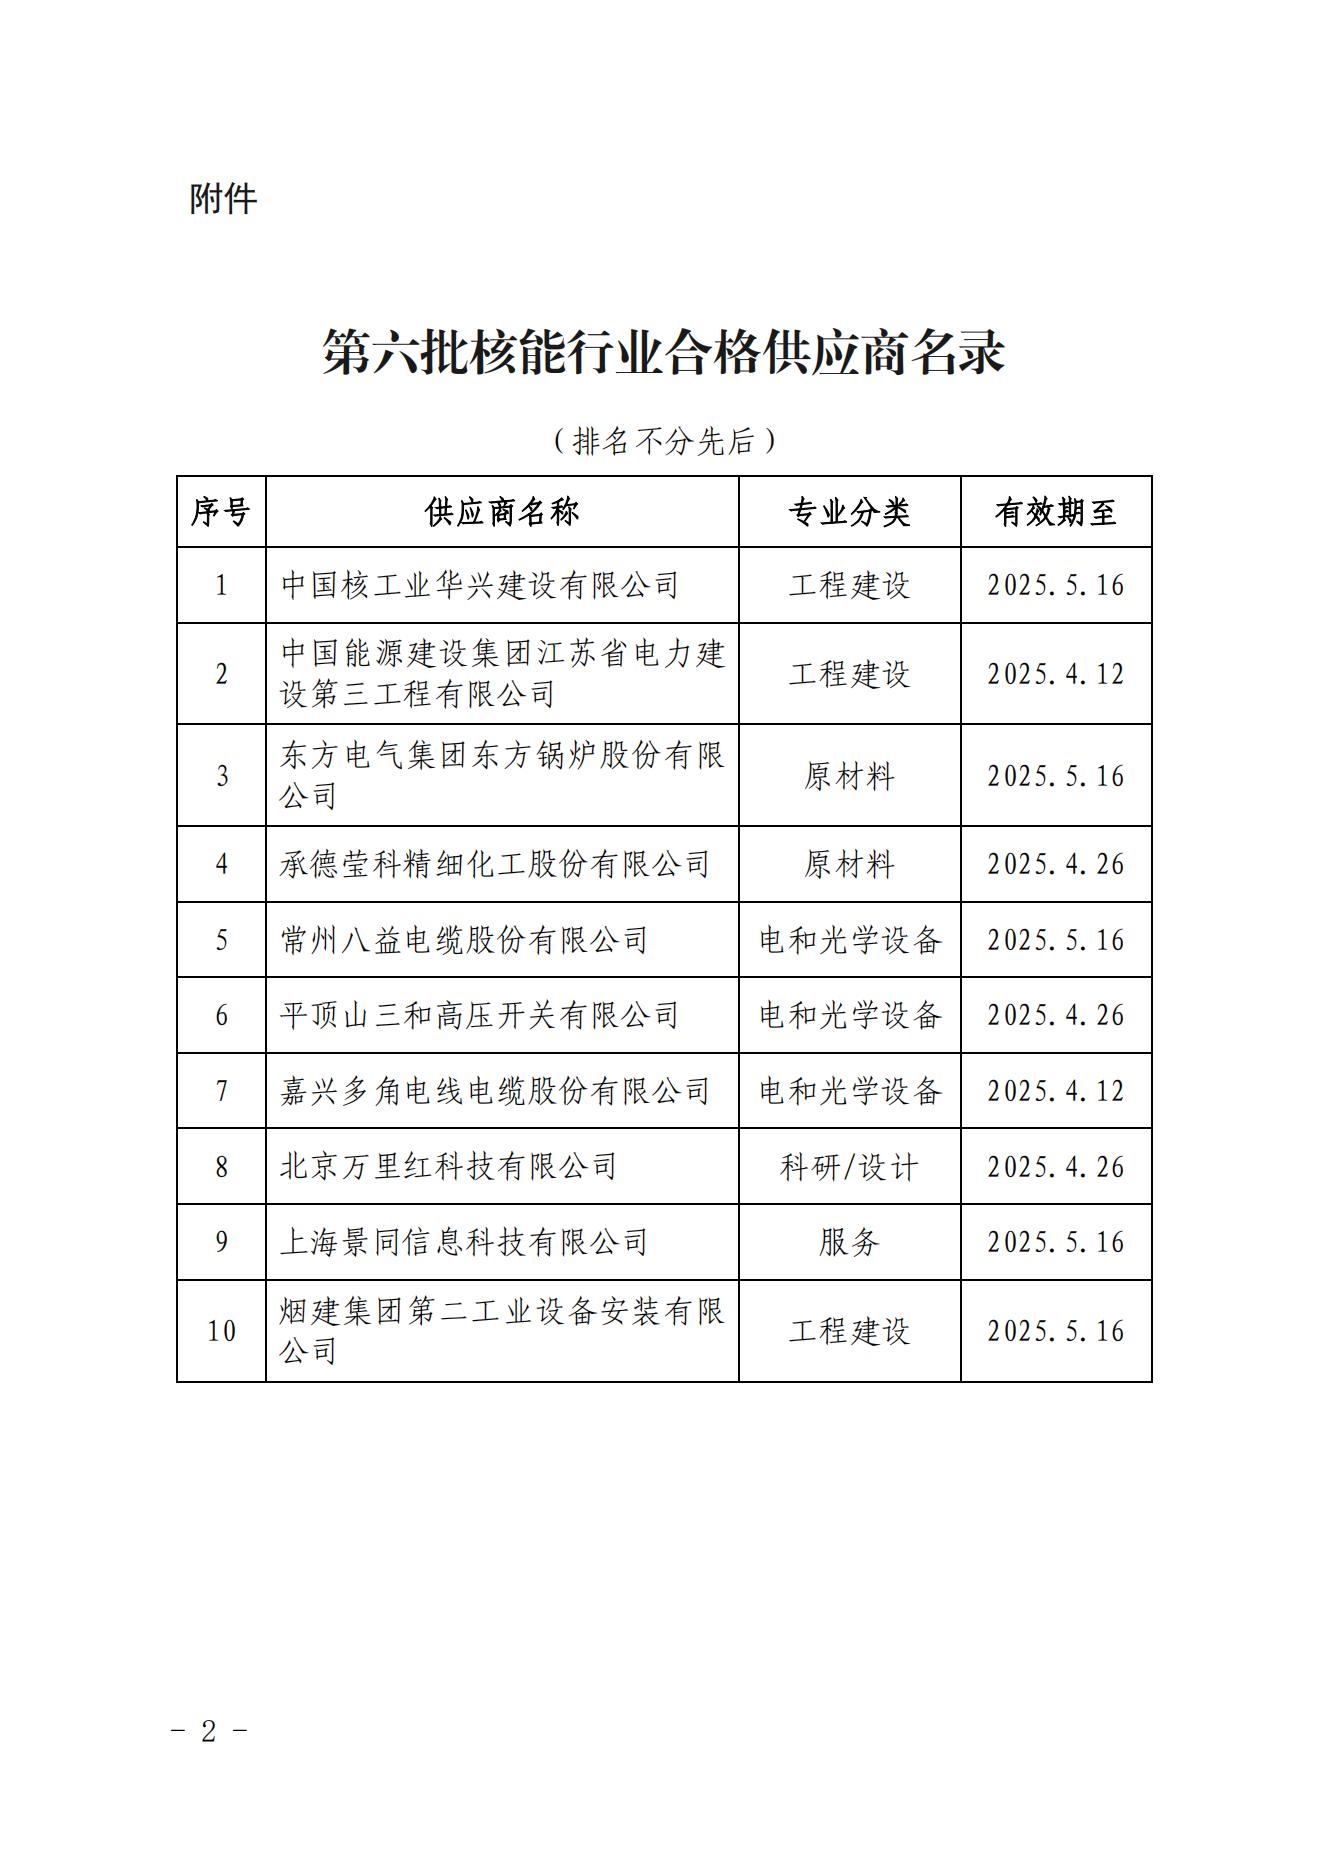 关于发布中国核能行业协会核能行业第六批合格供应商名录的公告_01.jpg